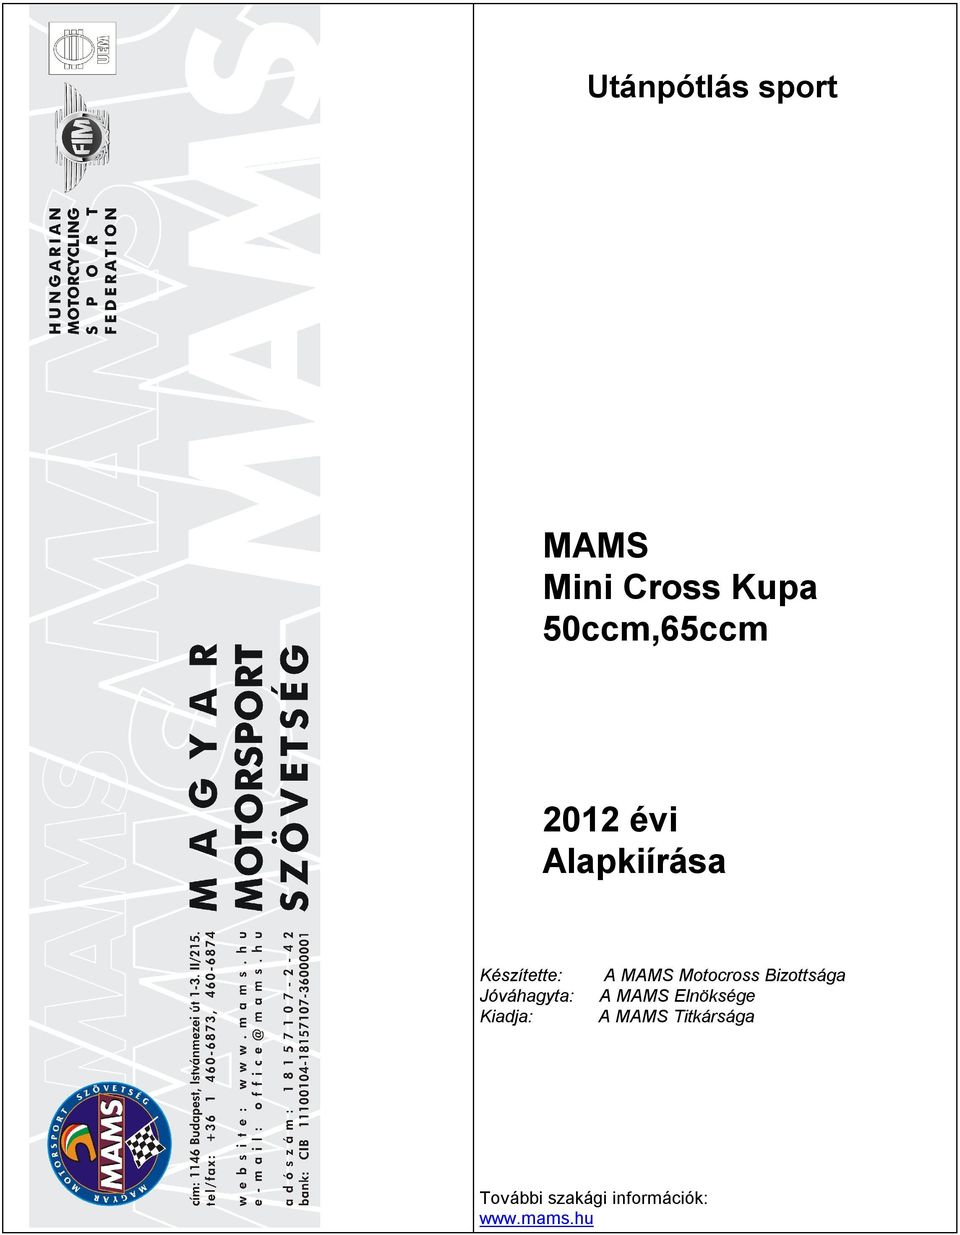 Kiadja: A MAMS Motocross Bizottsága A MAMS